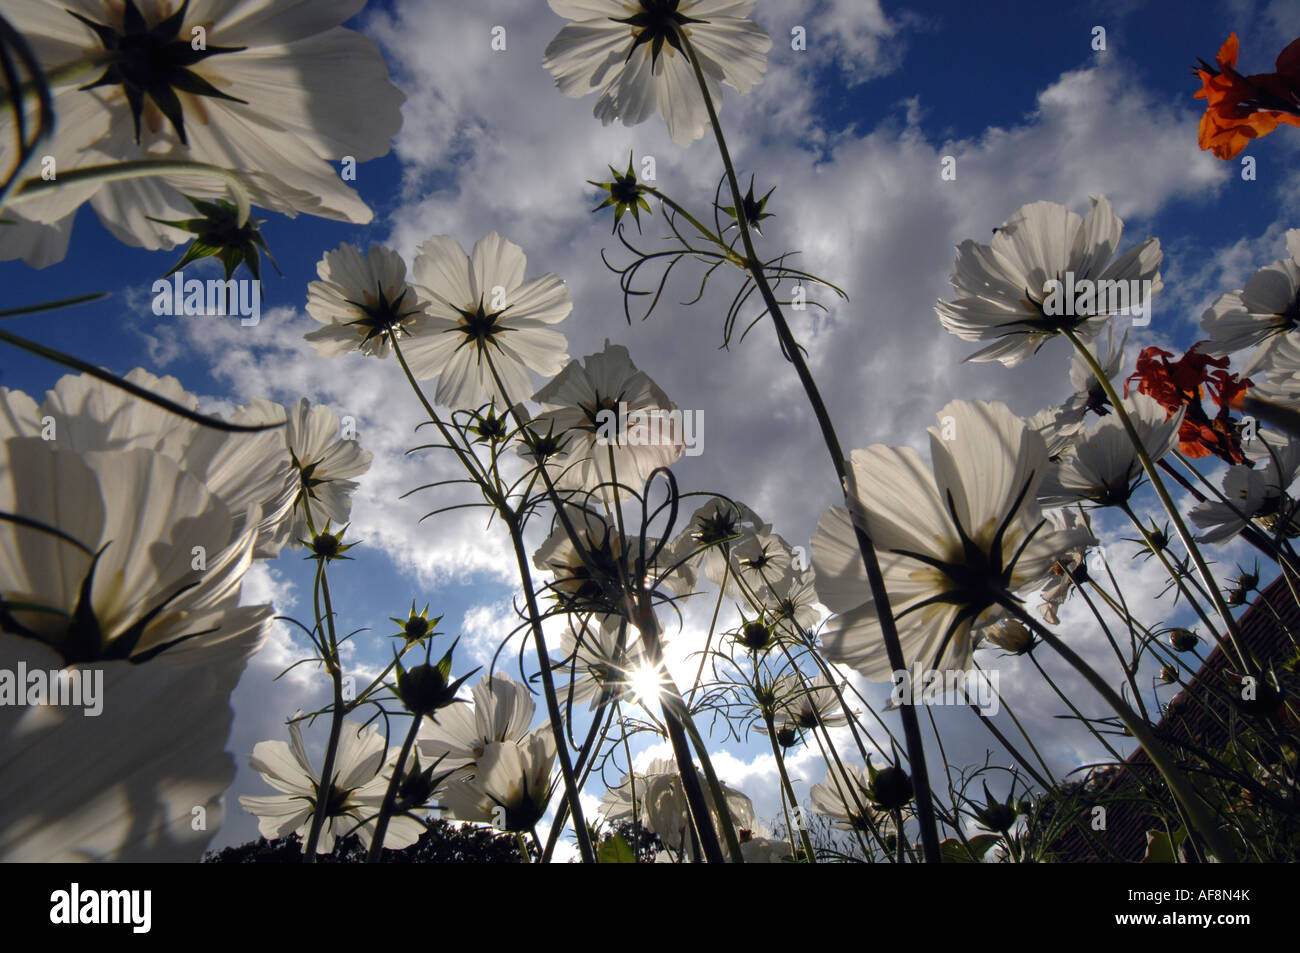 Nuages de cosmos blanc des fleurs dans un jardin de campagne anglaise en été Banque D'Images